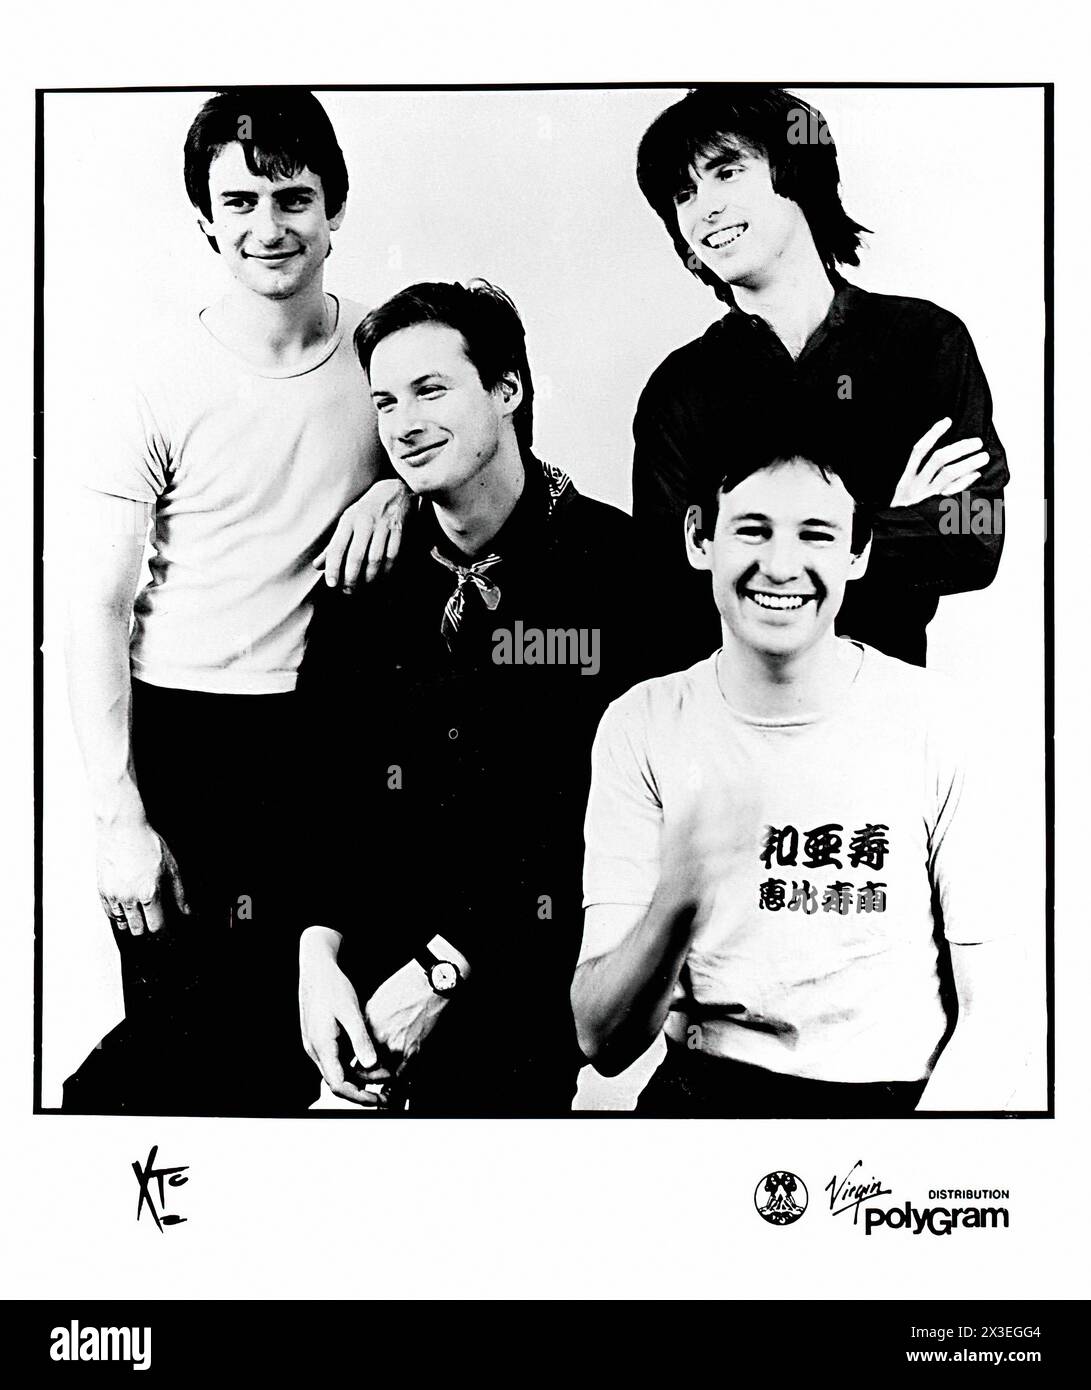 XTC - photo promotionnelle du label de musique vintage - photographe inconnu, pour usage éditorial uniquement Banque D'Images